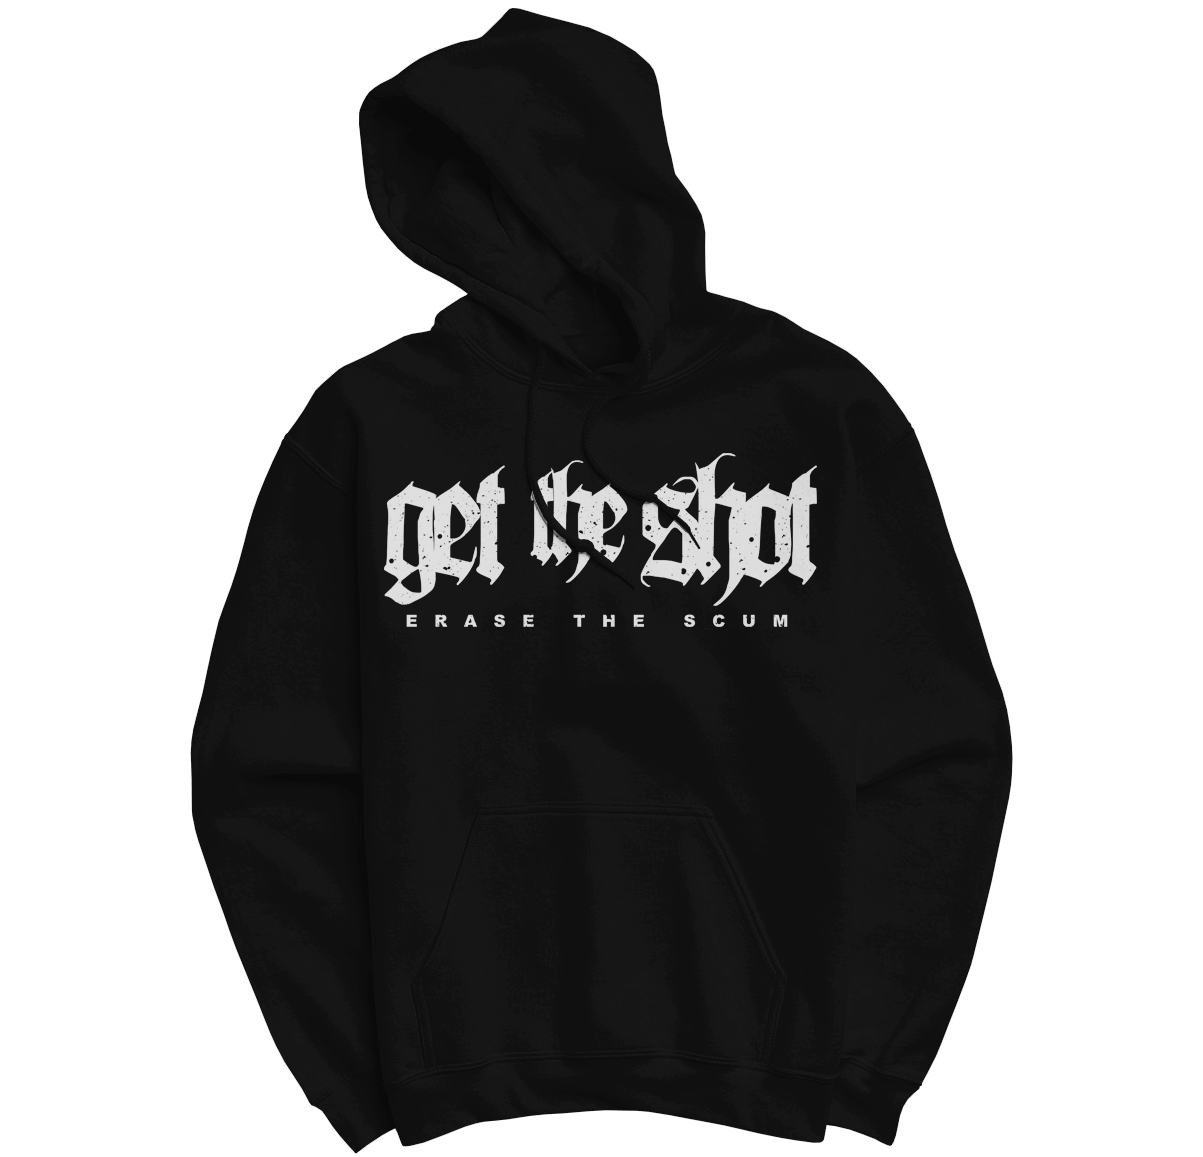 GET THE SHOT "Erase The Scum" Black Hooded Sweatshirt